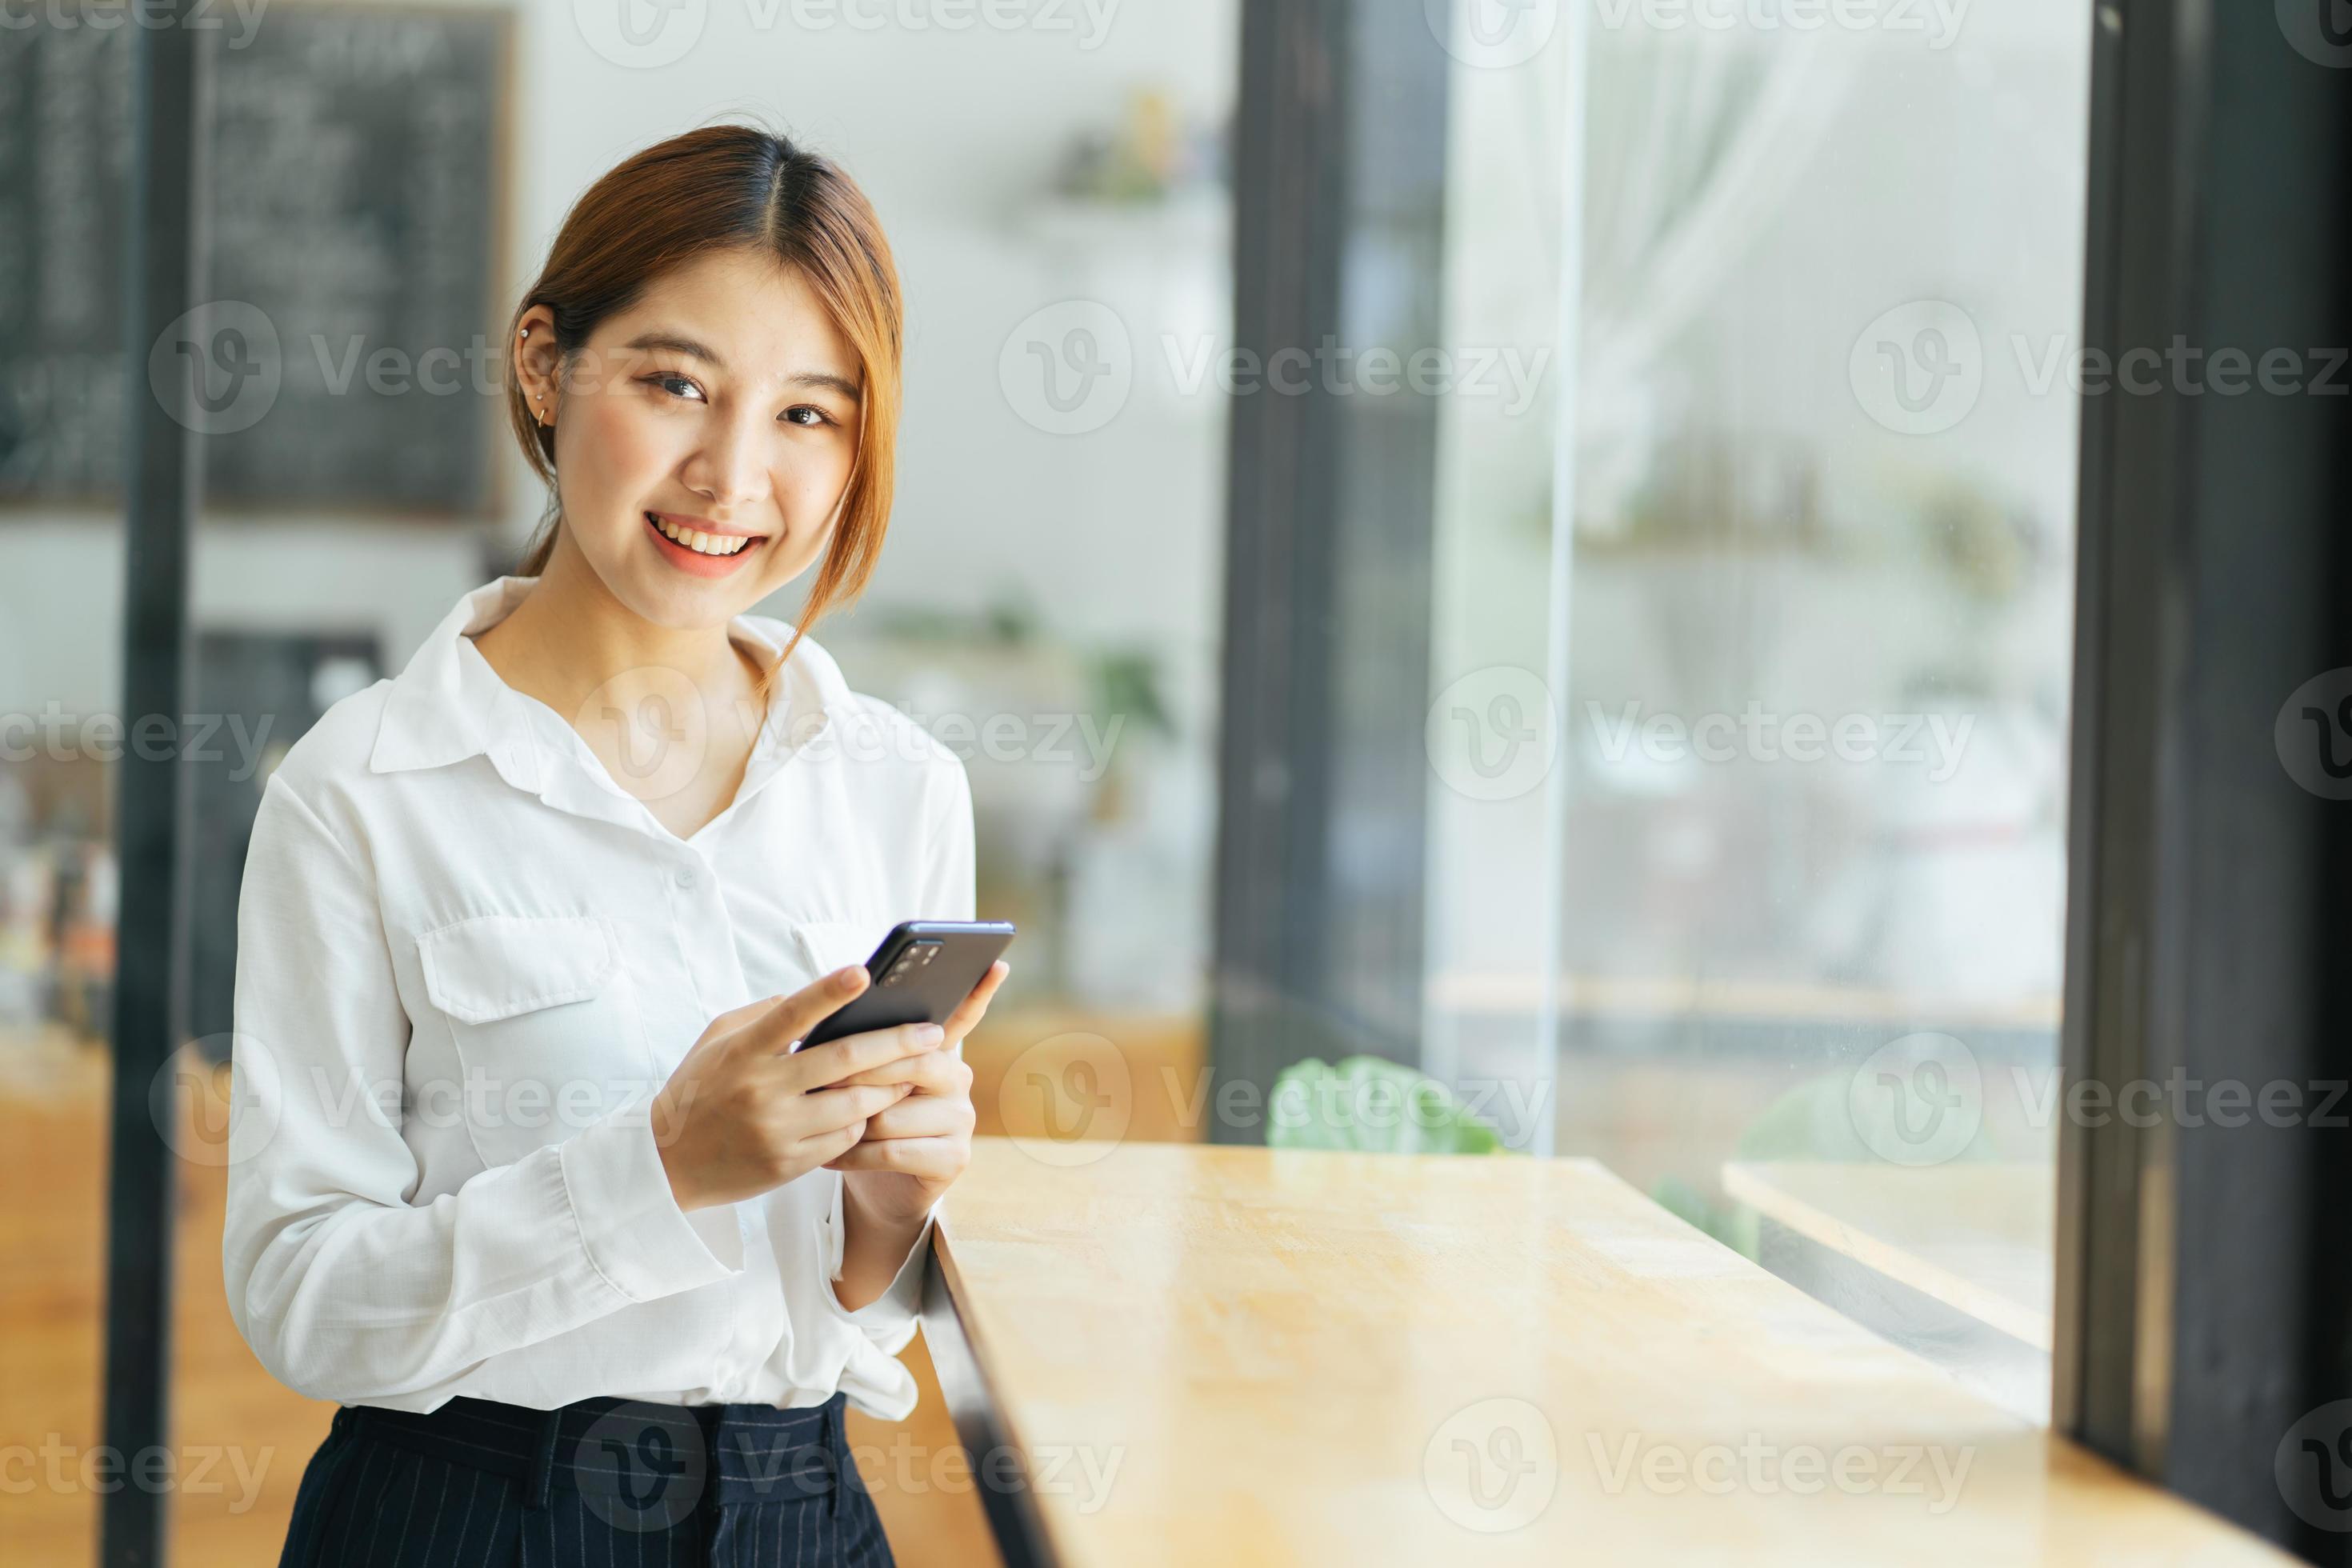 asiatische geschäftsfrau in lässiger bürokleidung ist glücklich und fröhlich, während sie mit ihrem smartphone kommuniziert. foto